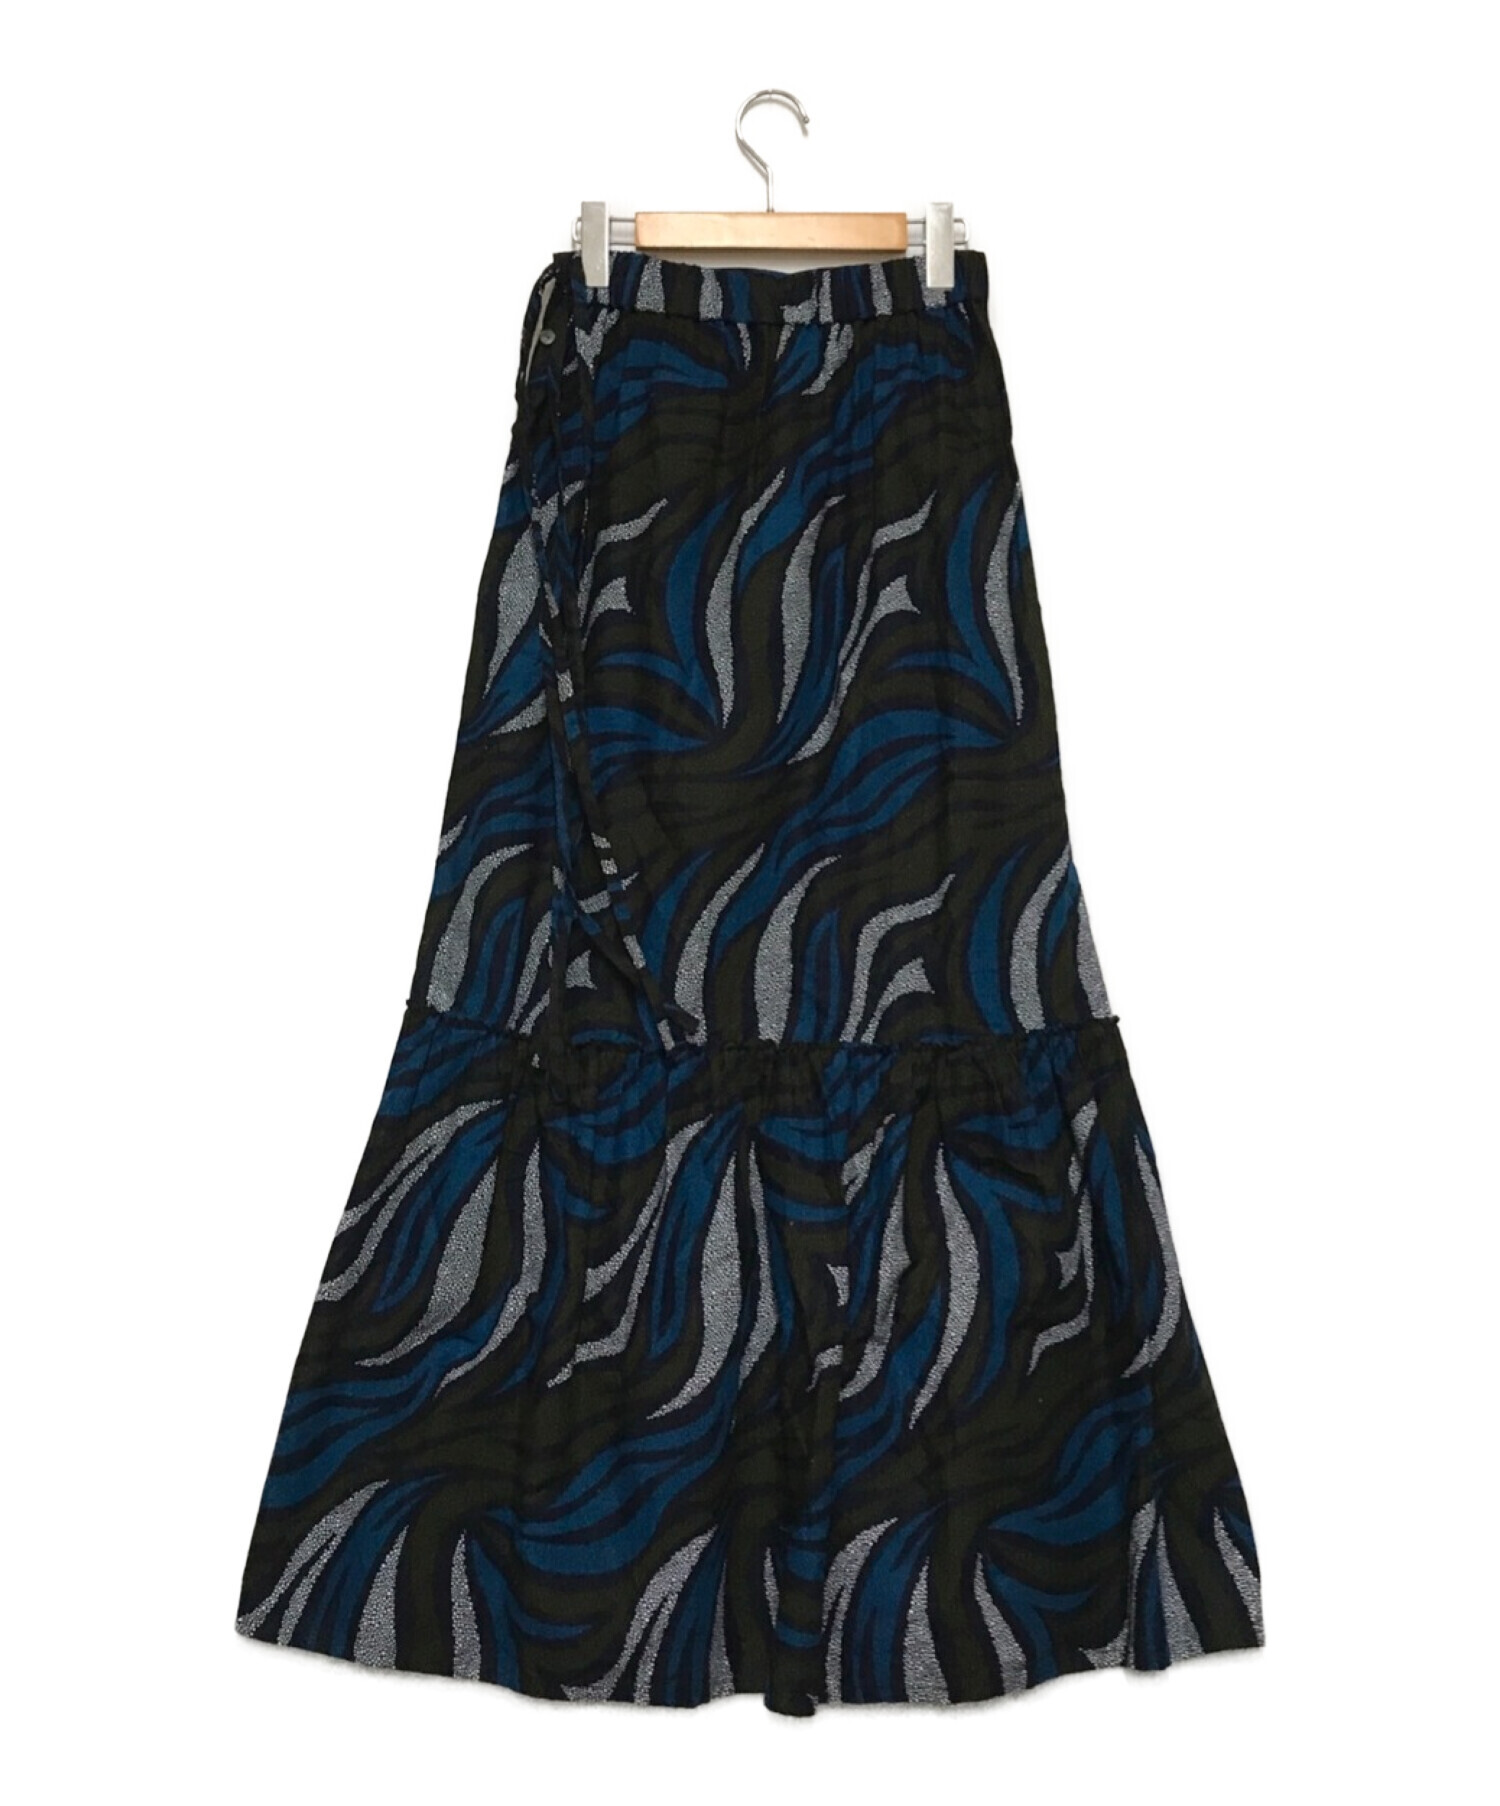 MAISON SPECIAL (メゾンスペシャル) アフリカンバティックプリントマキシスカート ブルー サイズ:FREE